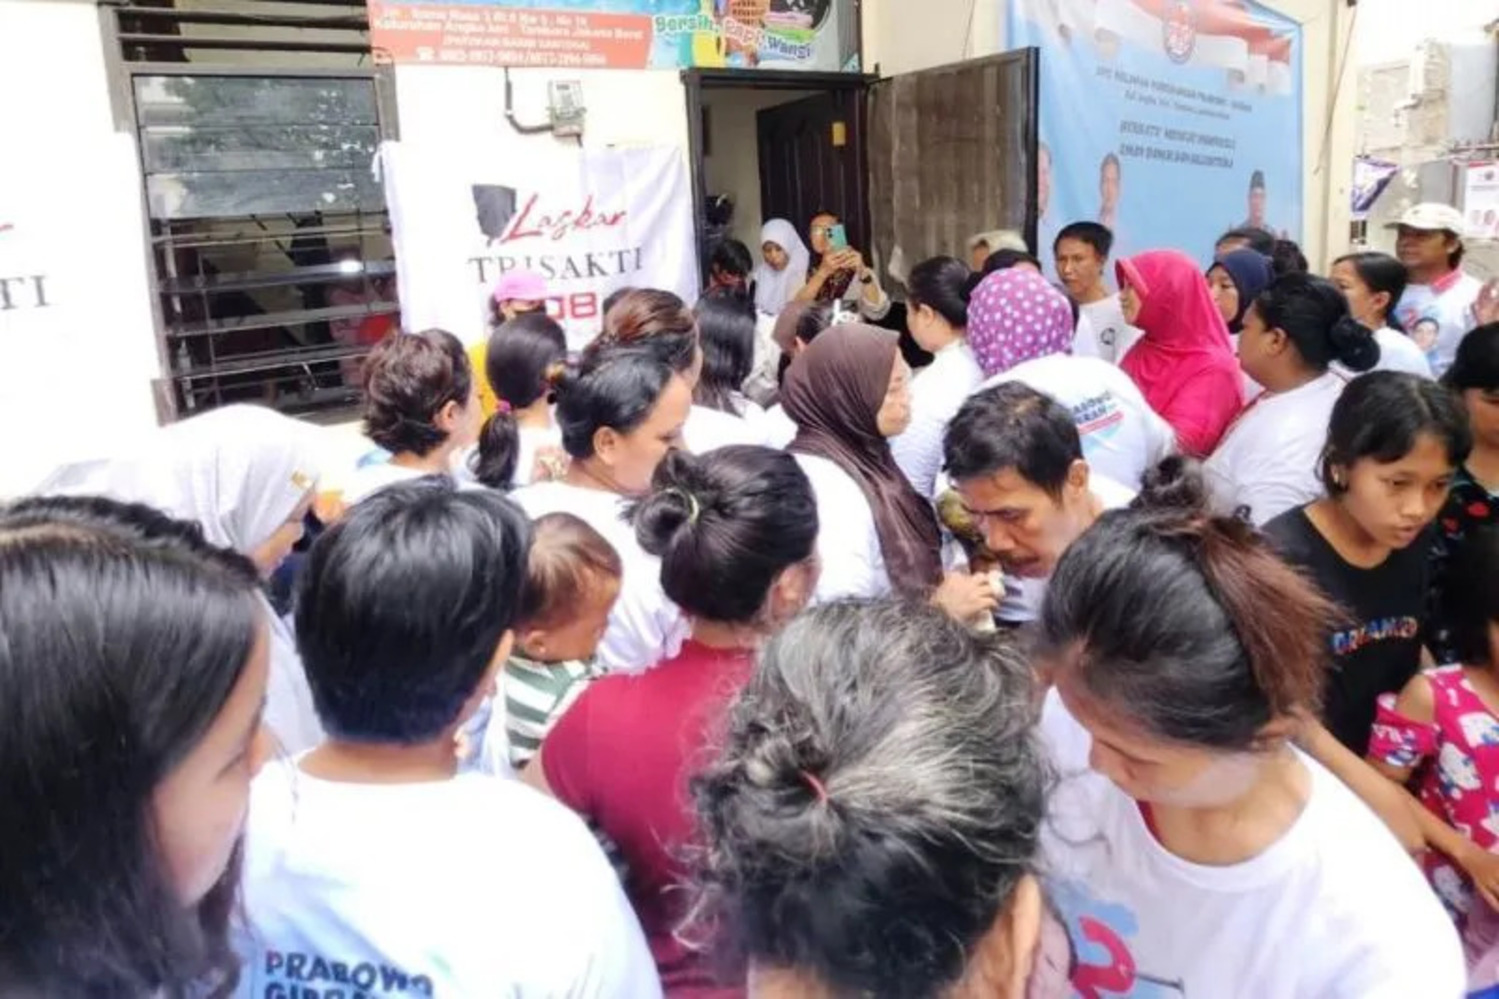 Sabtu Tisu Ceria Relawan Laskar Trisakti 08 Bagikan Susu dan Biskuit ke Warga Tambora serta Pejagalan Jakarta Barat